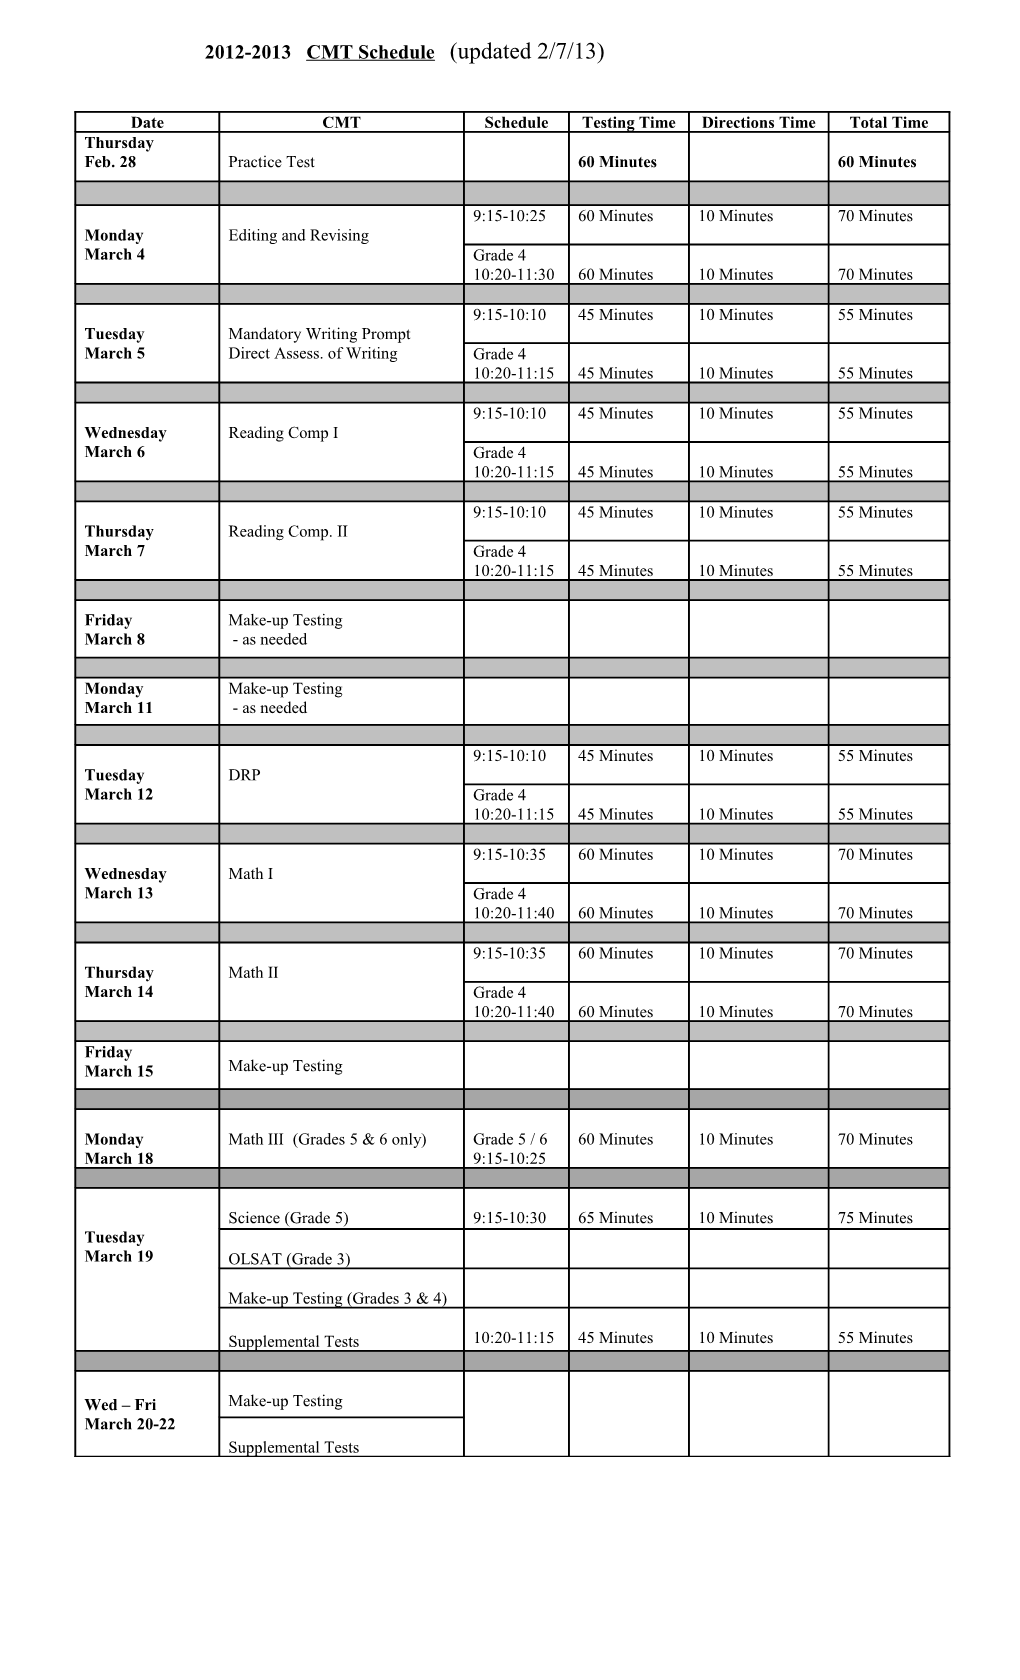 2012-2013 CMT Schedule (Updated 2/7/13)